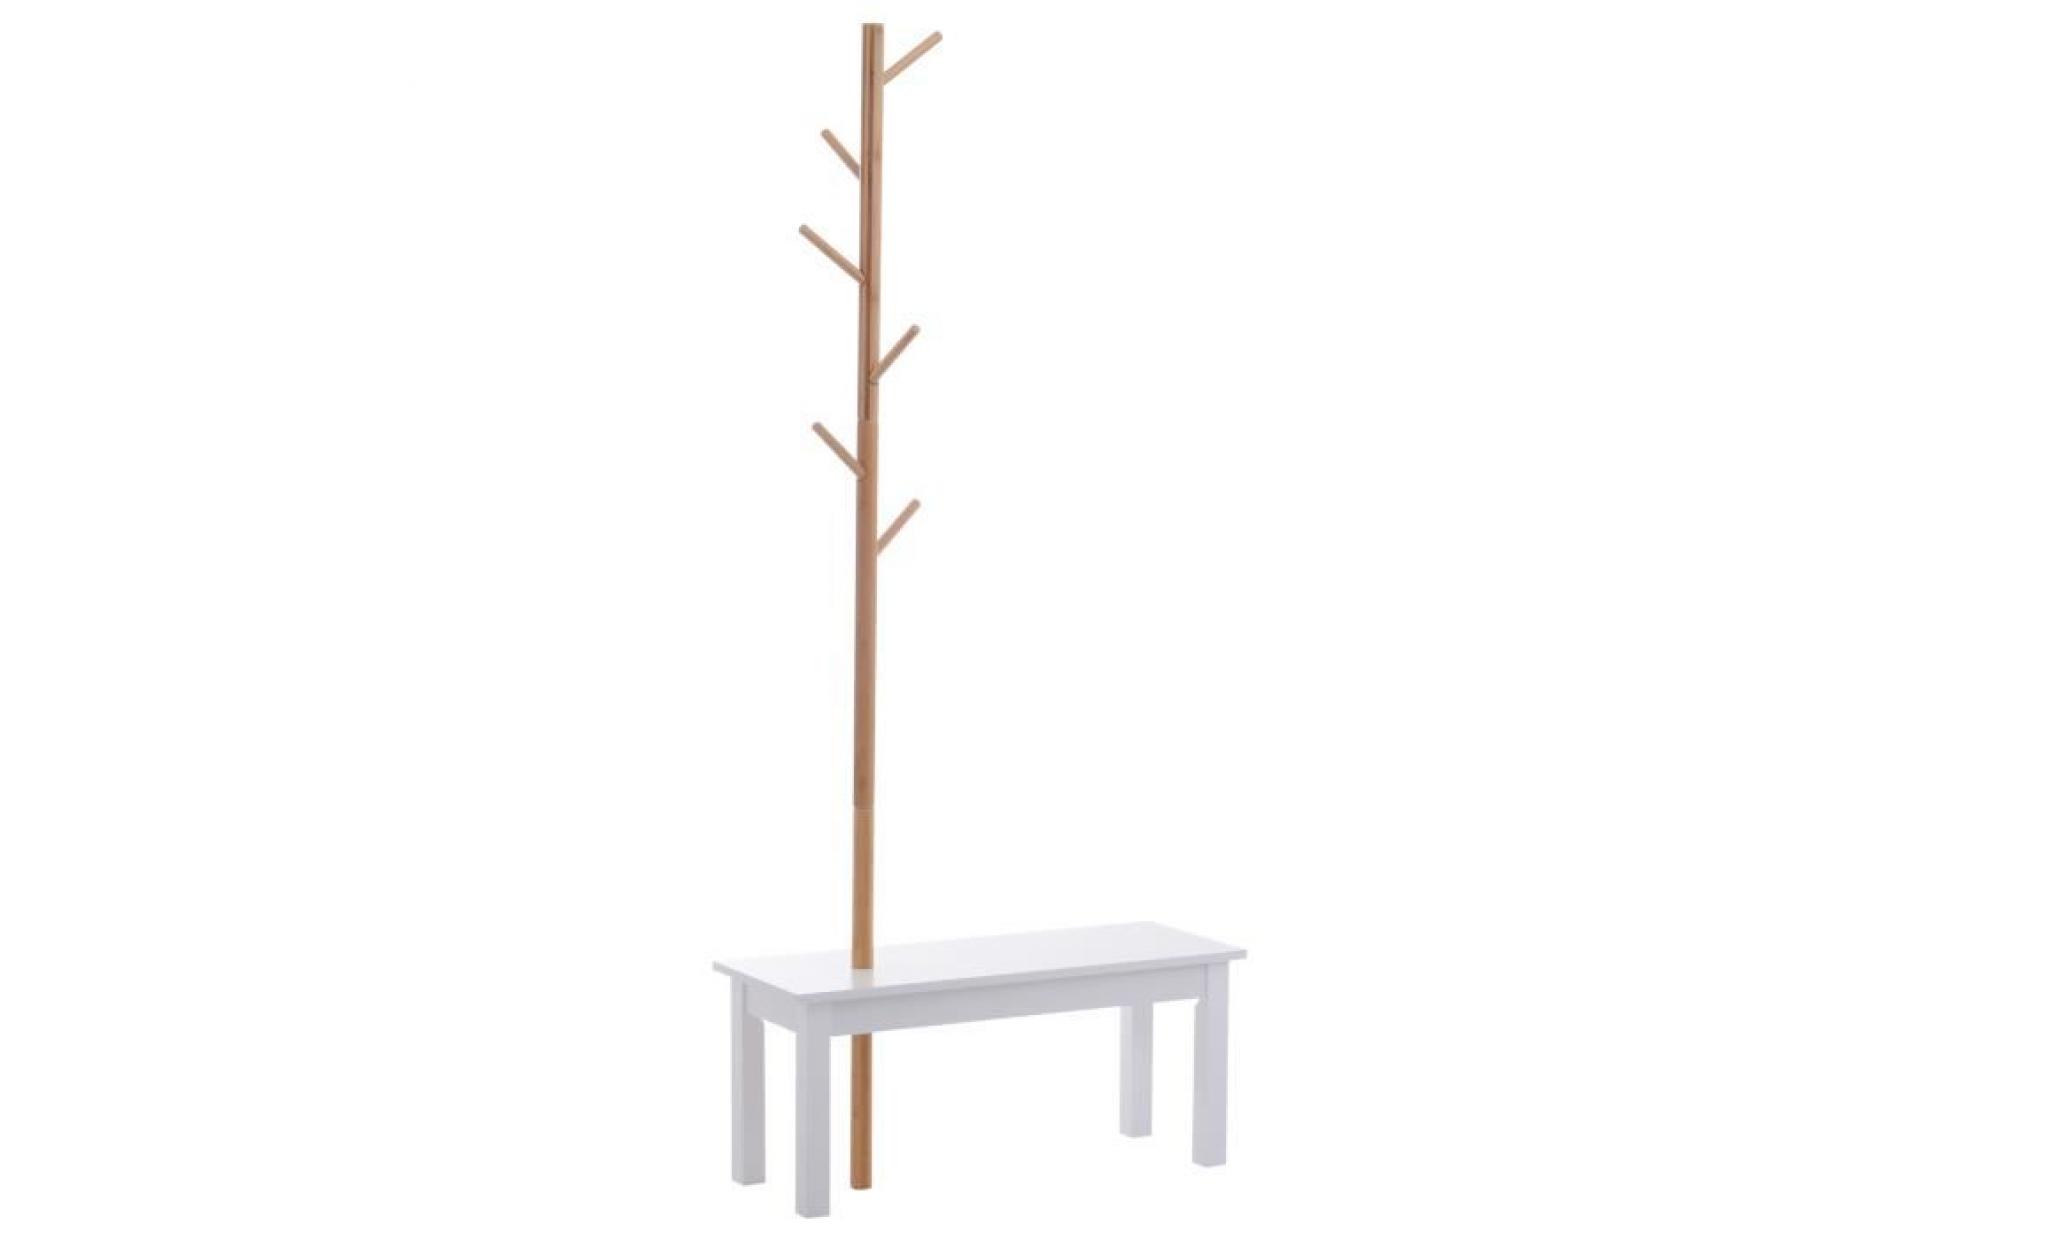 banc porte manteaux 2 en 1 design contemporain cosy dim. 80l x 30l x 180h cm mdf blanc bois massif bambou 80x30x180cm blanc